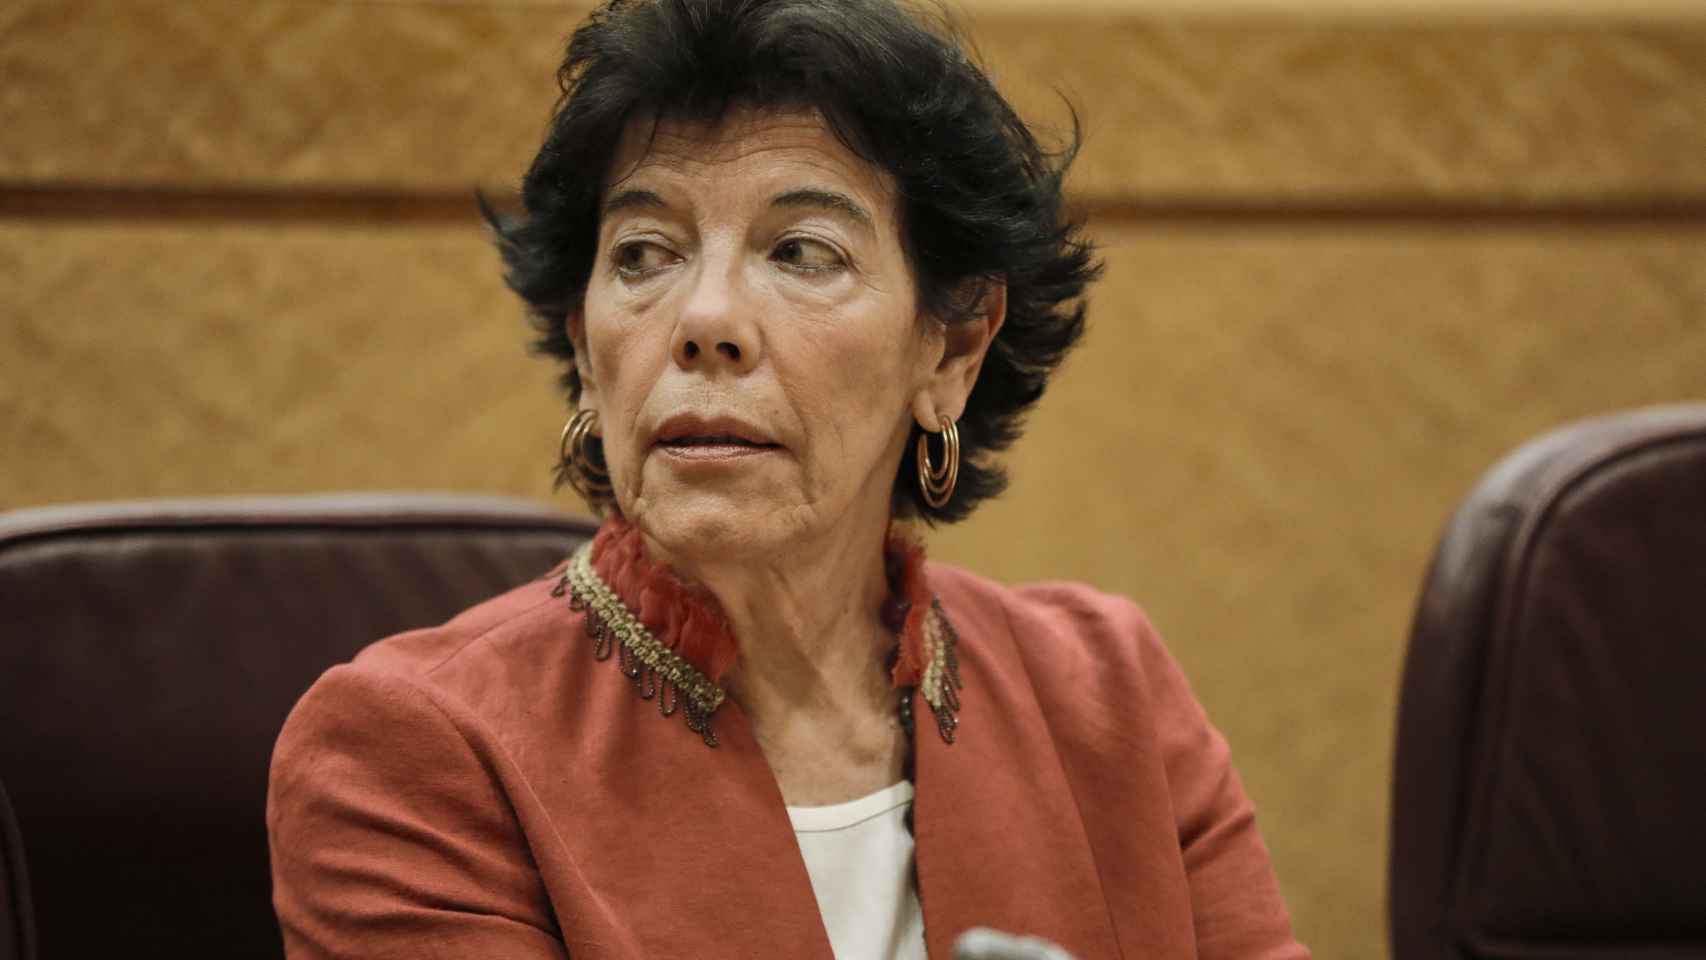 La ministra de Educación y Formación Profesional, Isabel Celaá.